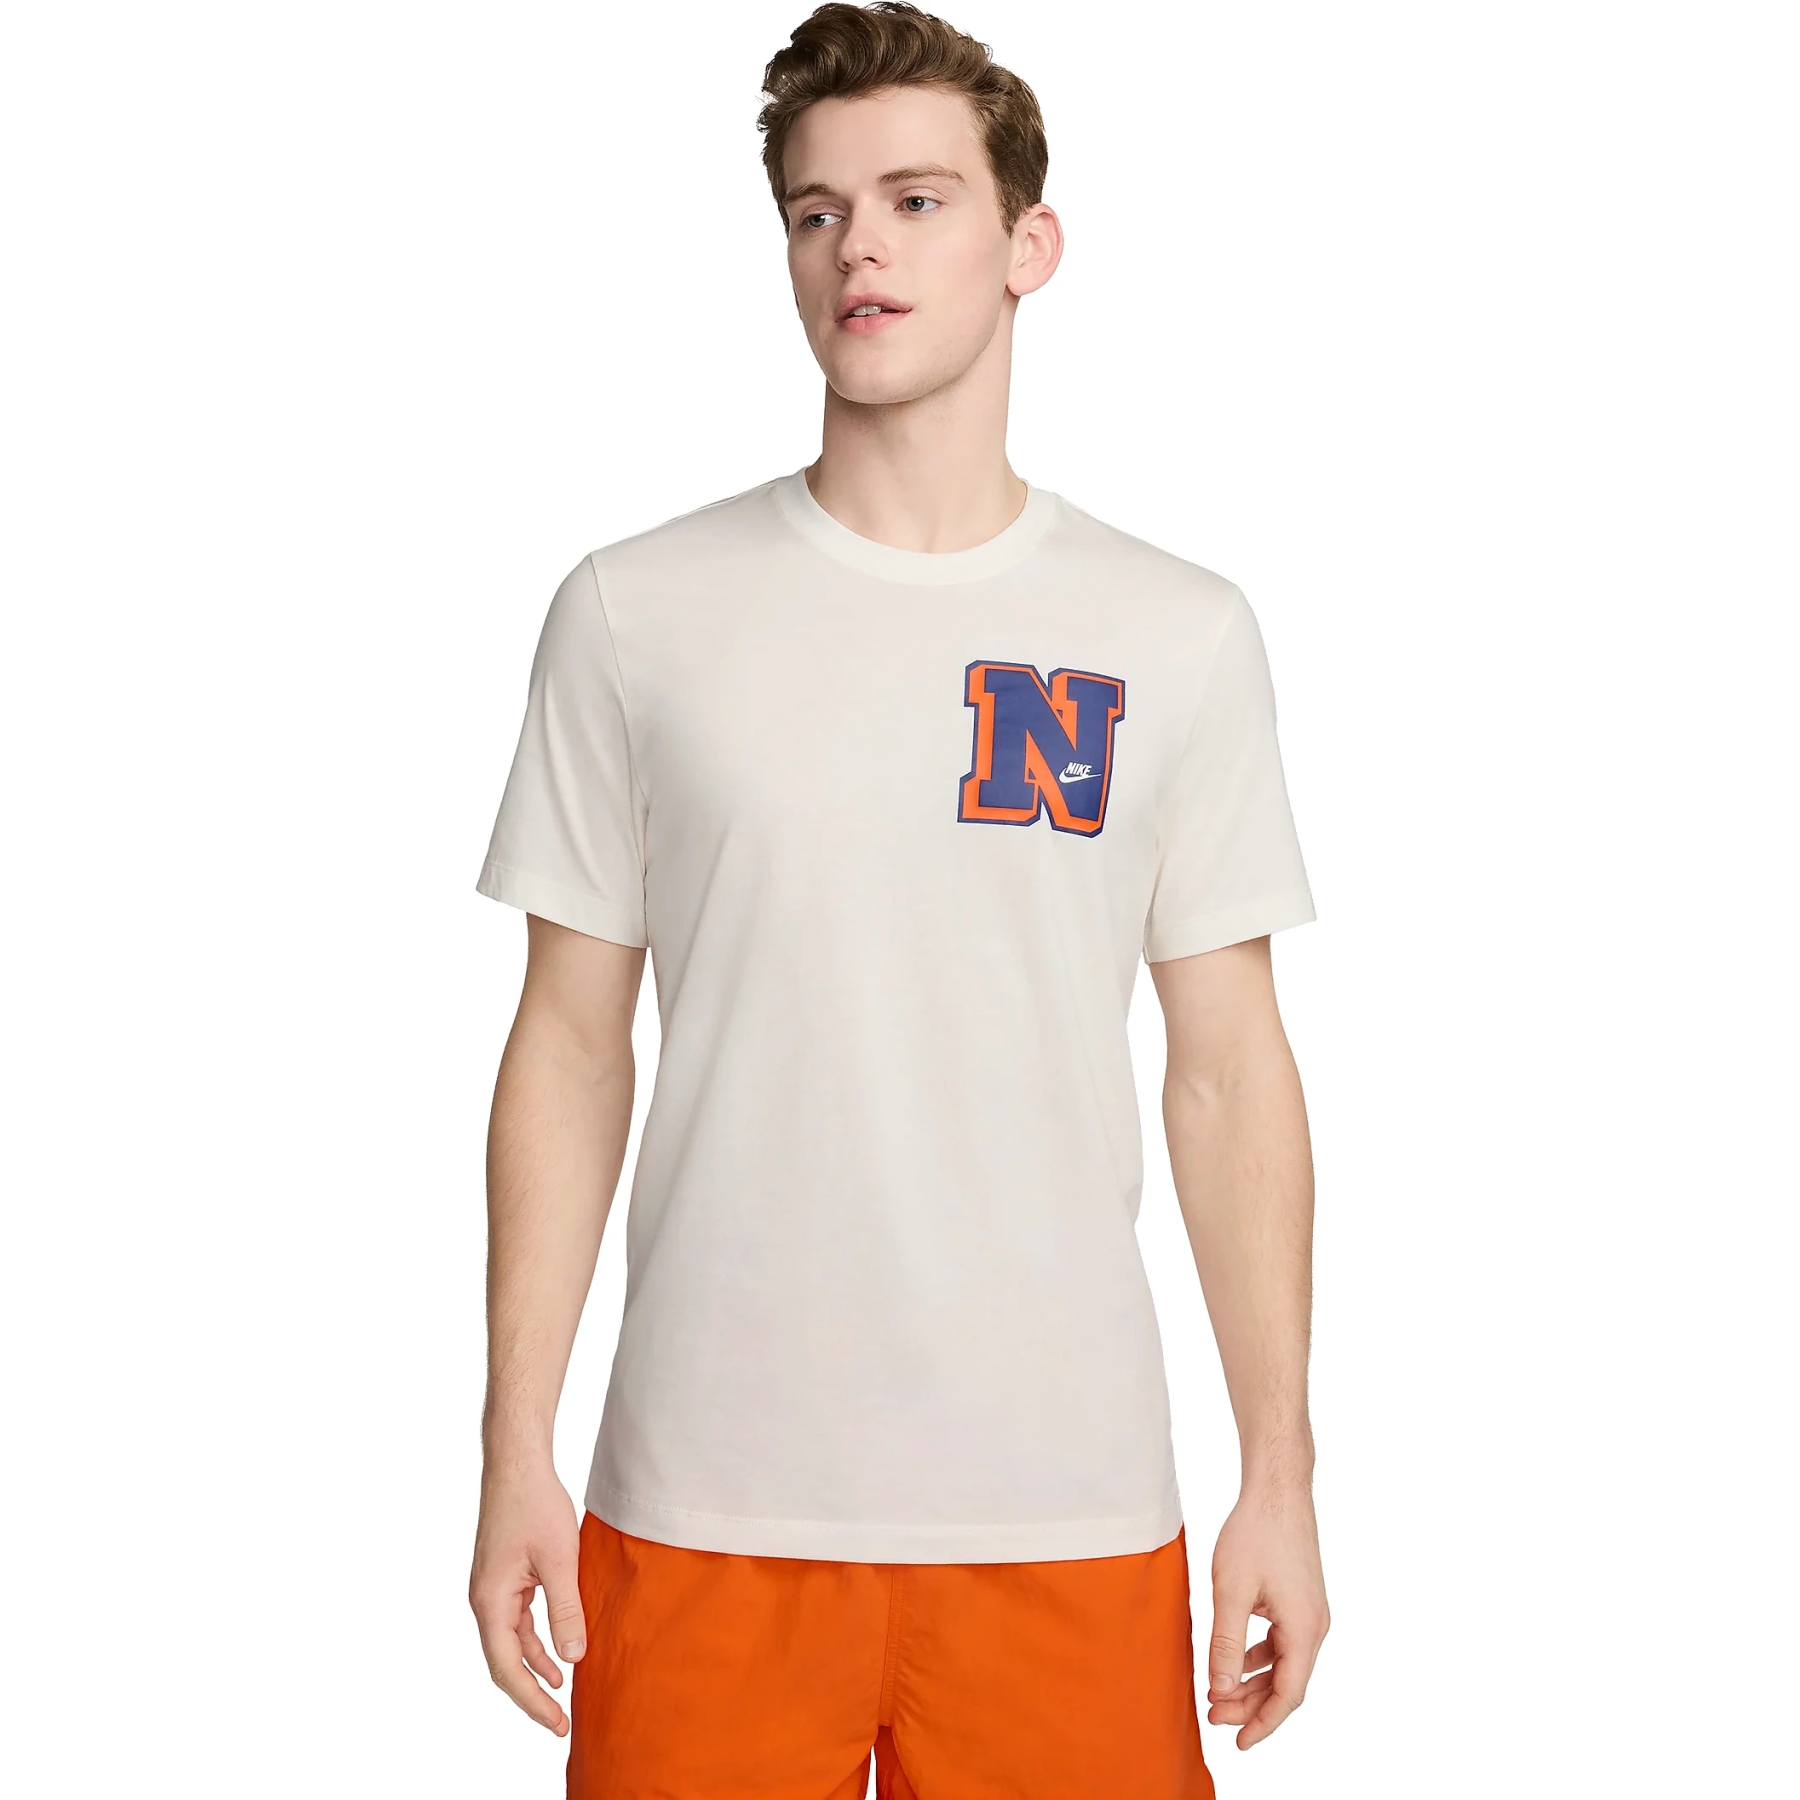 Produktbild von Nike Sportswear Shirt Men - sail FV3772-133